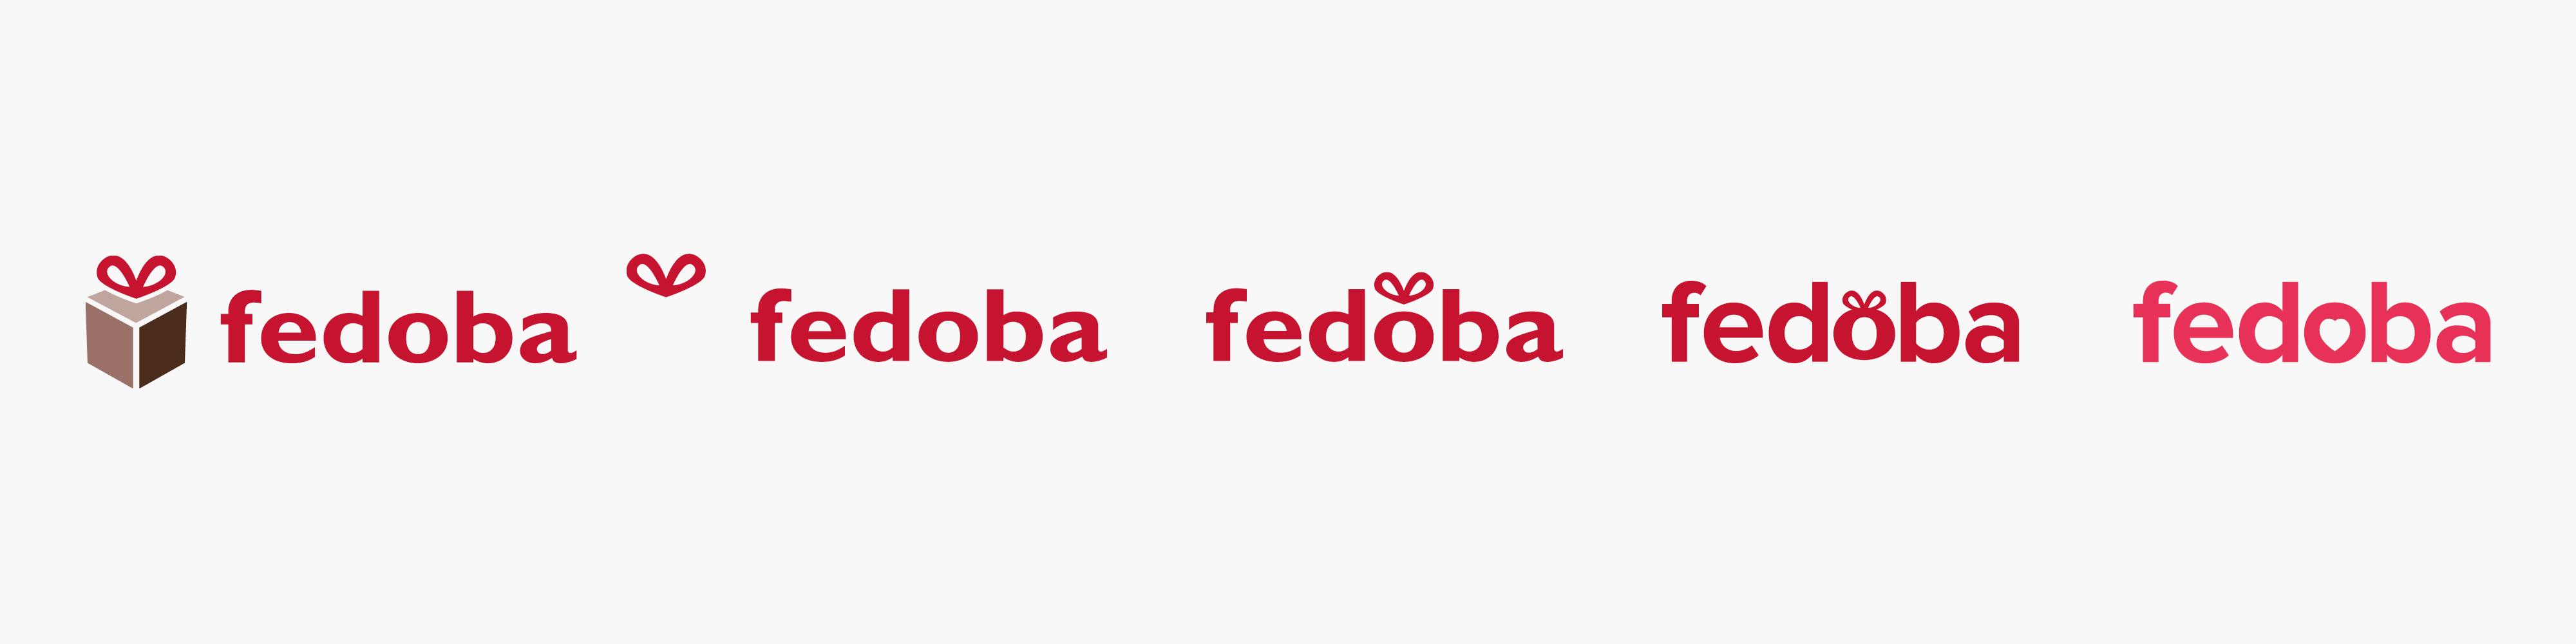 Fedoba